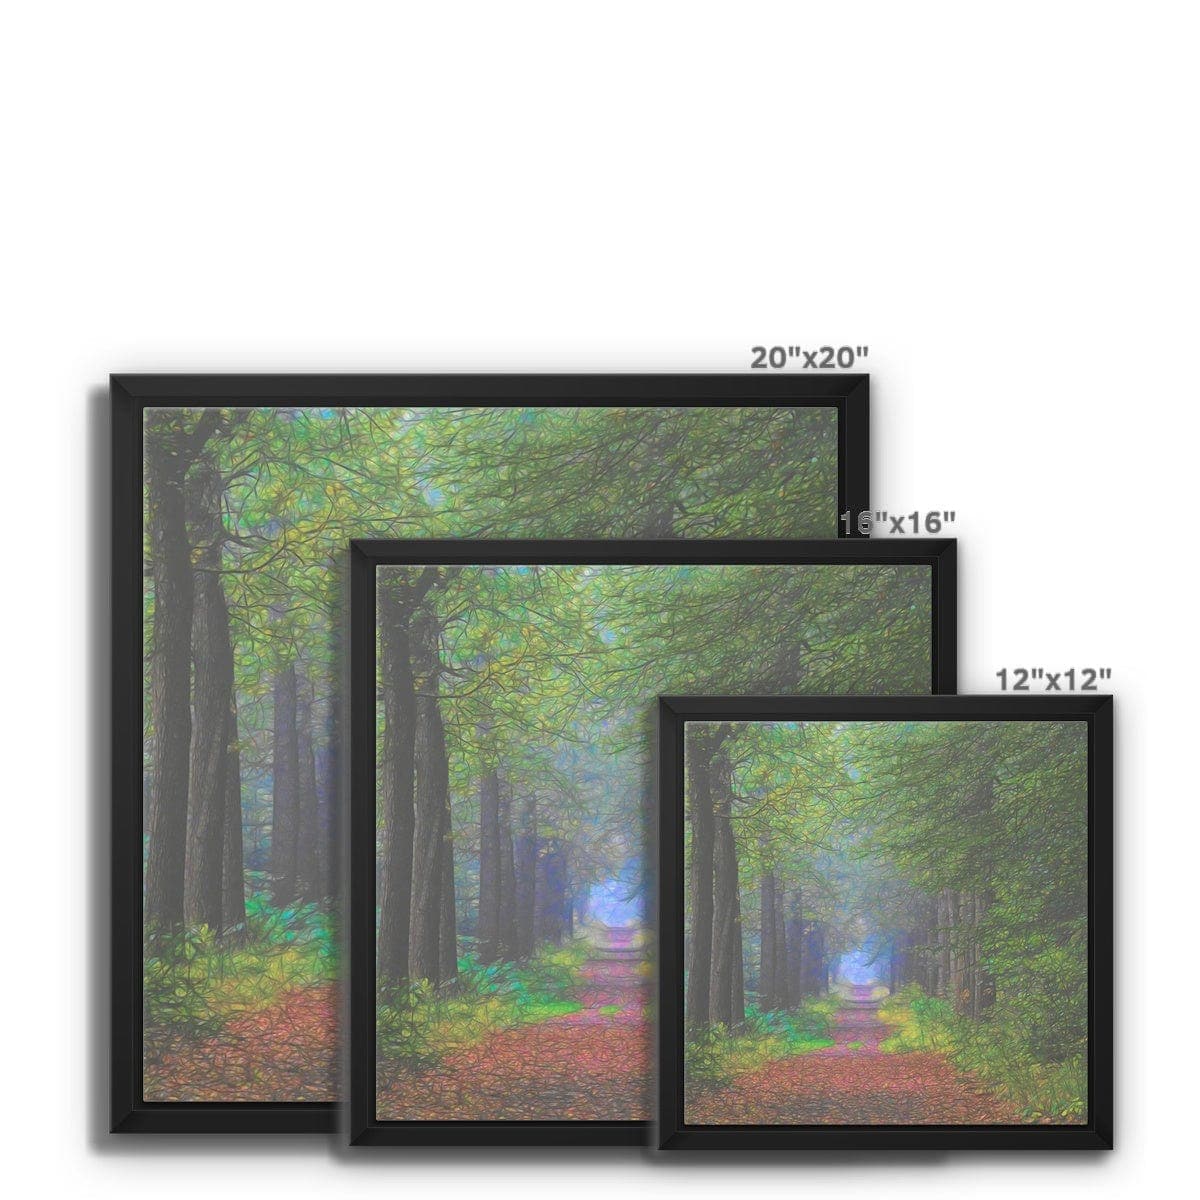 Forest lane, Framed Canvas,by Ingrid Hütten